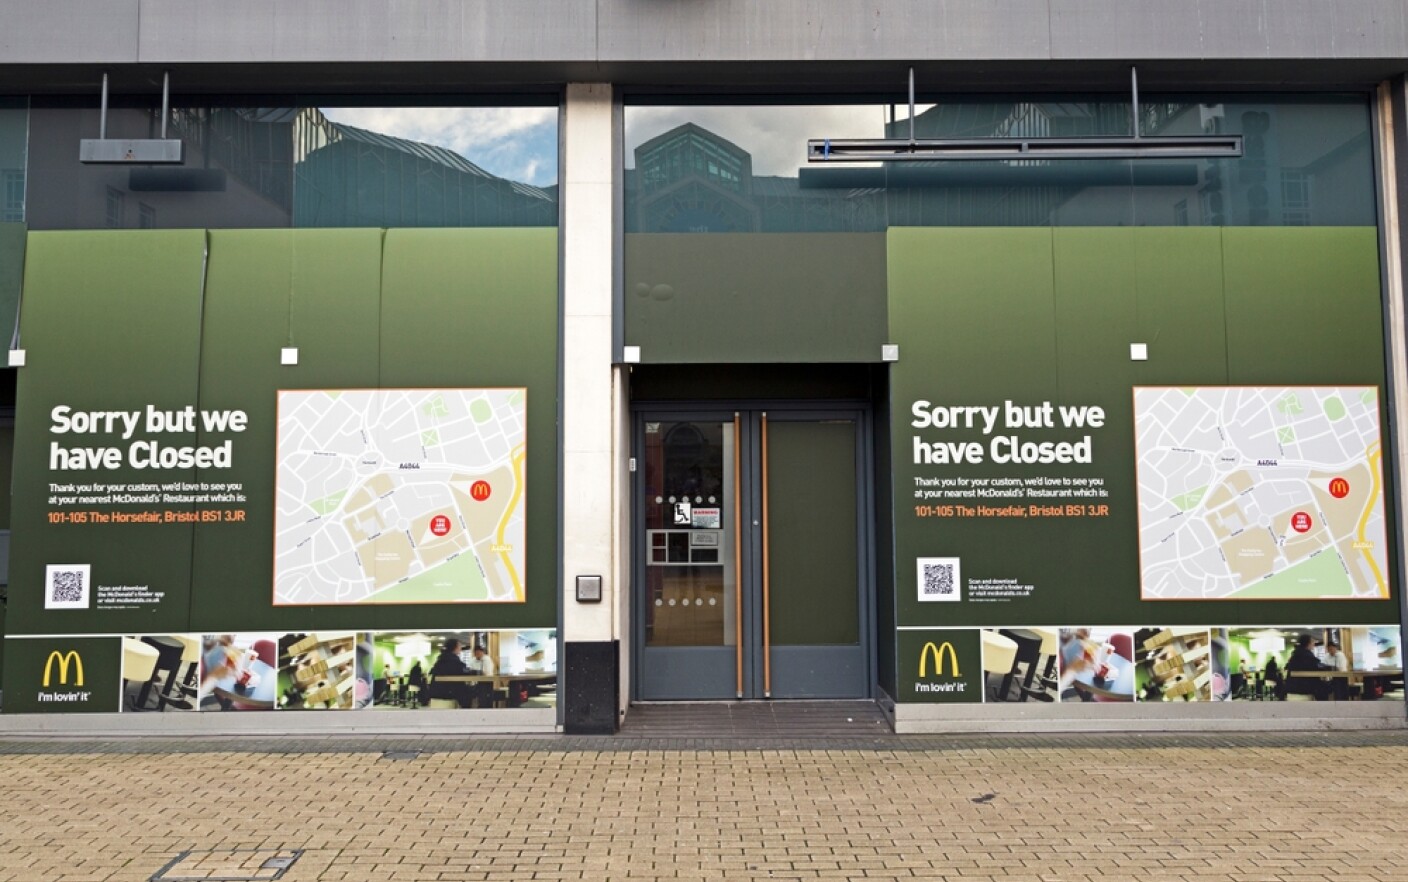 Şeful McDonald's, chemat să dea socoteală în parlamentul britanic, după scandalul tinerilor de 17 ani hărțuiți la bucătărieŞeful McDonald's, chemat să dea socoteală în parlamentul britanic, după scandalul tinerilor de 17 ani hărțuiți la bucătărie